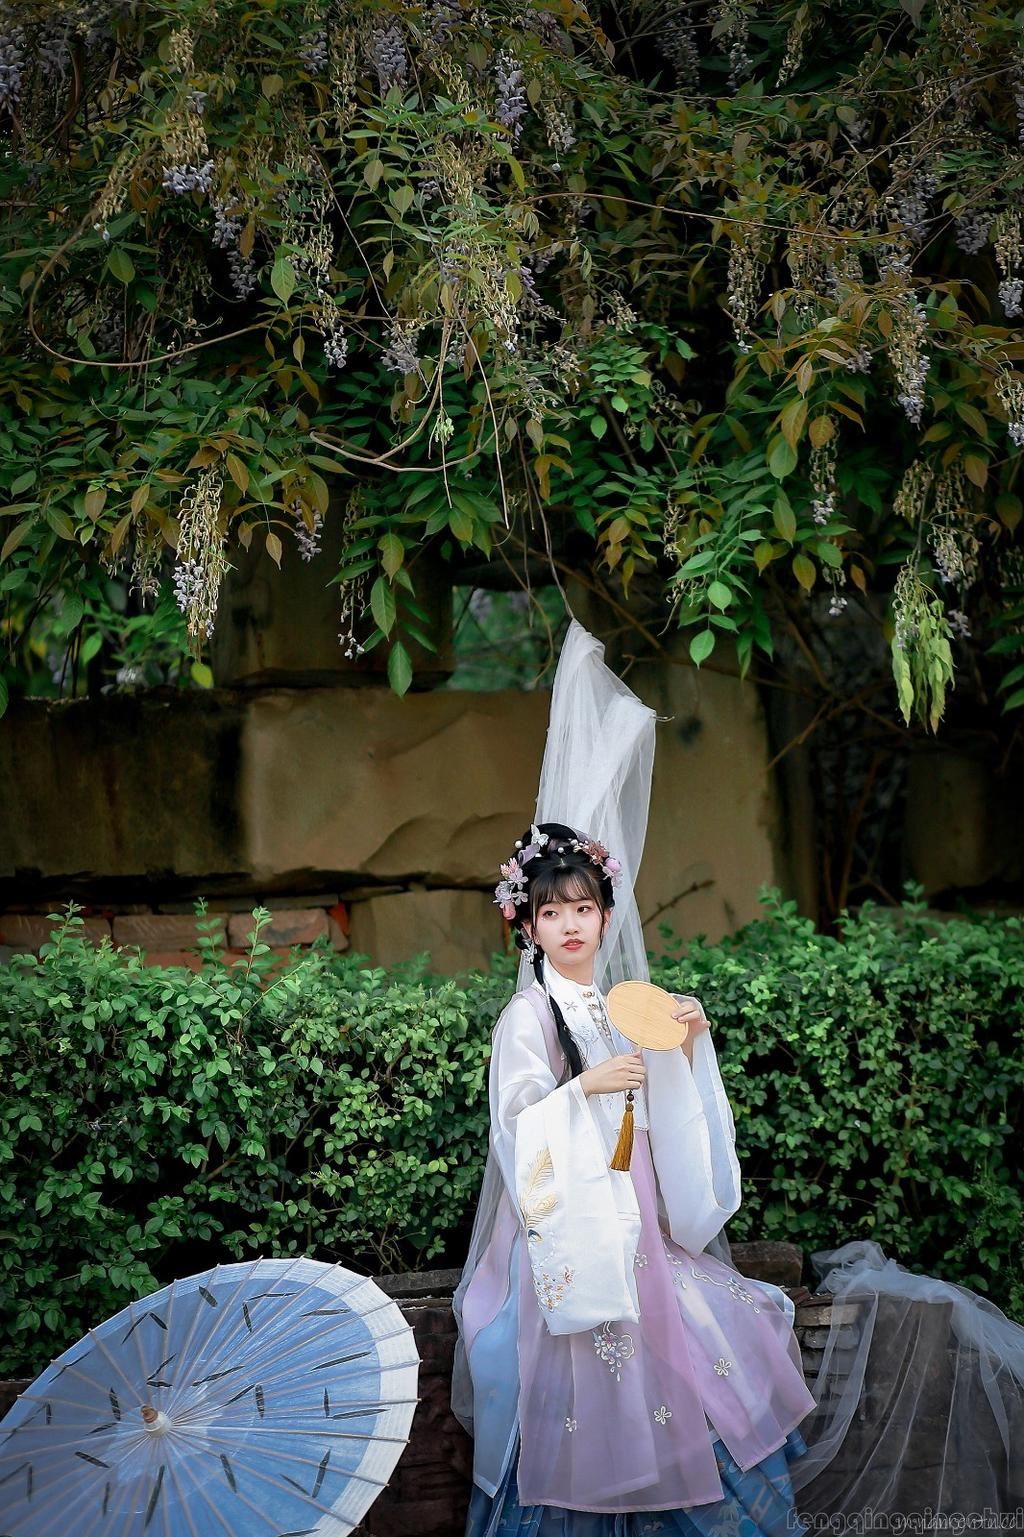 执罗扇带纸伞的汉服美女树下裙摆飞舞迷人古风唯美写真图片第5张